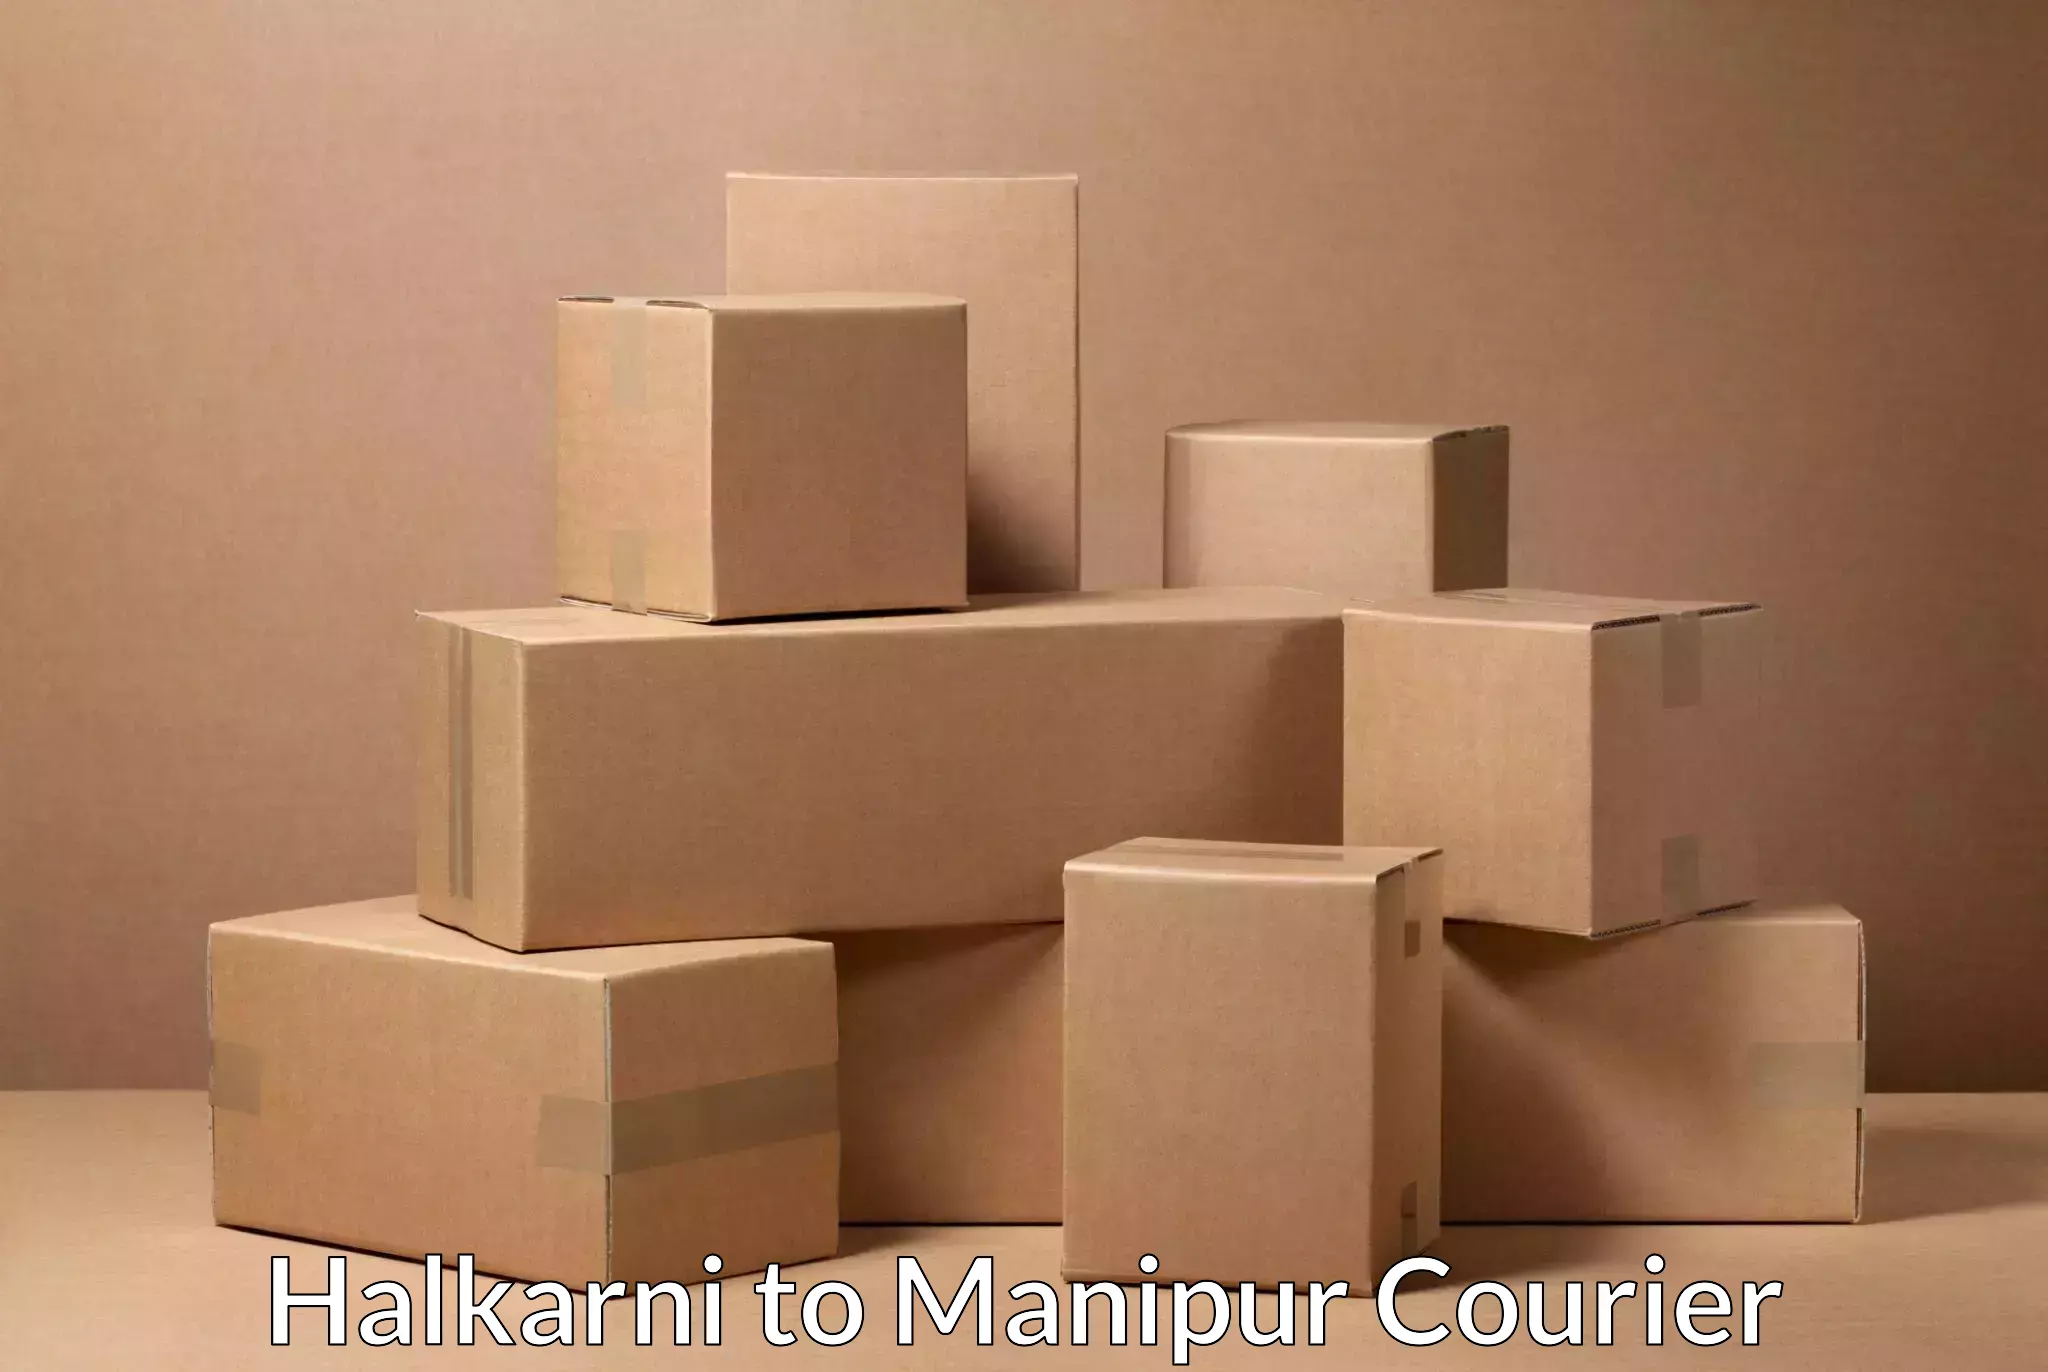 Customer-centric shipping Halkarni to NIT Manipur